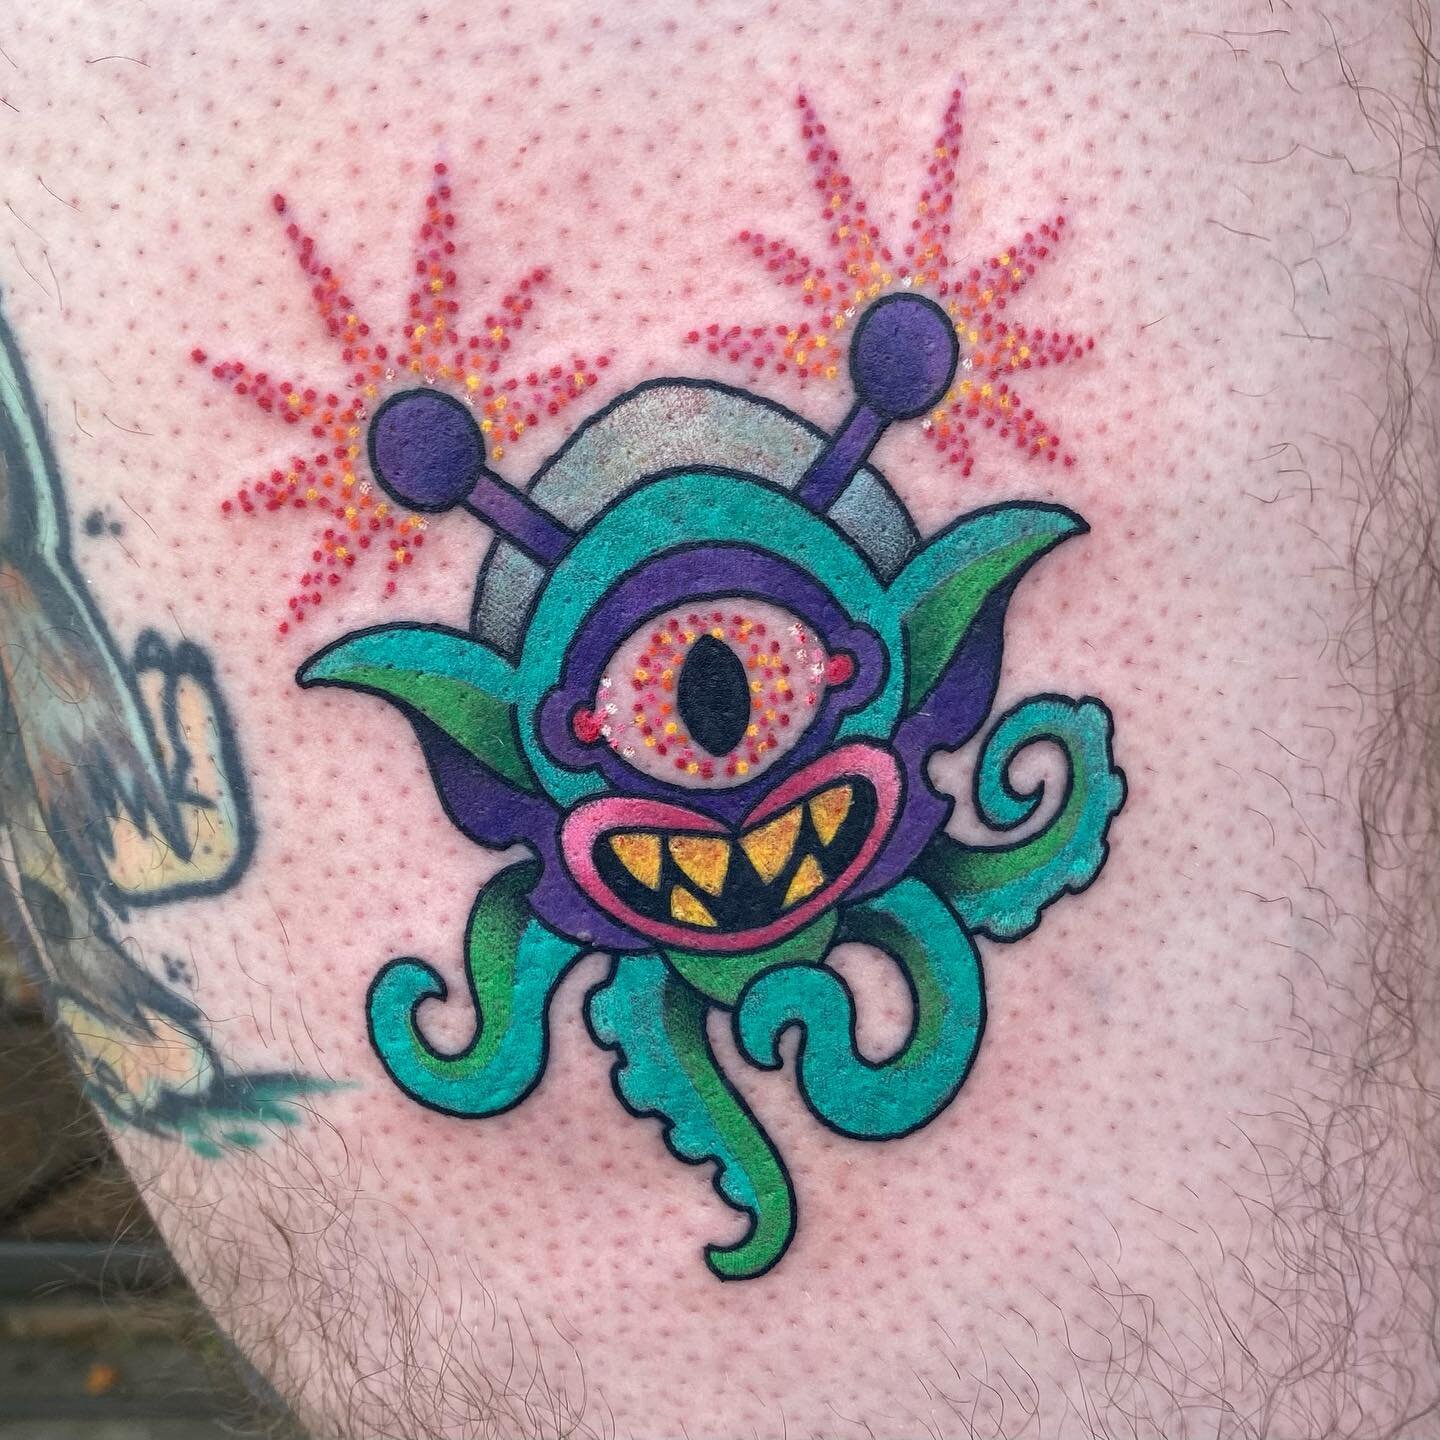 Lil alien tattoo 🛸 @snakeoiltattoo #kentuckytattooers #neotraditionaltattoo #alientattoo